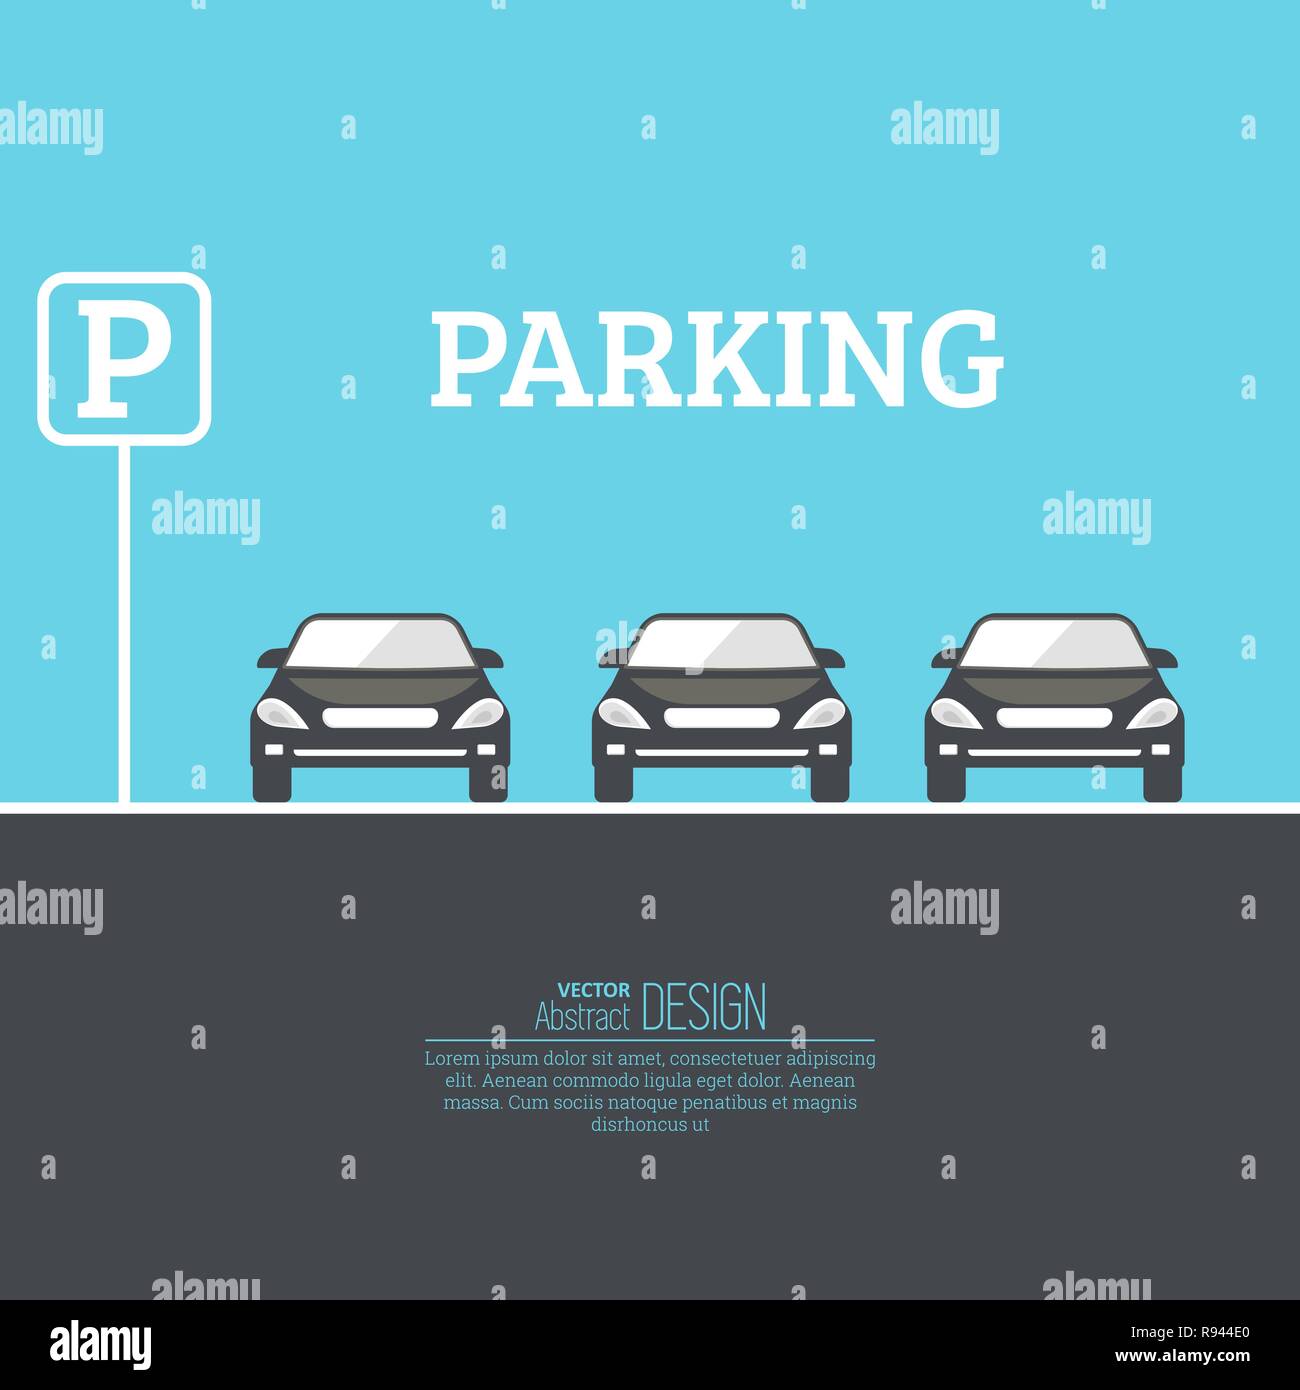 Zusammenfassung Hintergrund mit Autos und Verkehrszeichen. Parkplatz Zone. Vektor Element der grafischen Gestaltung. Flat Style. Stock Vektor